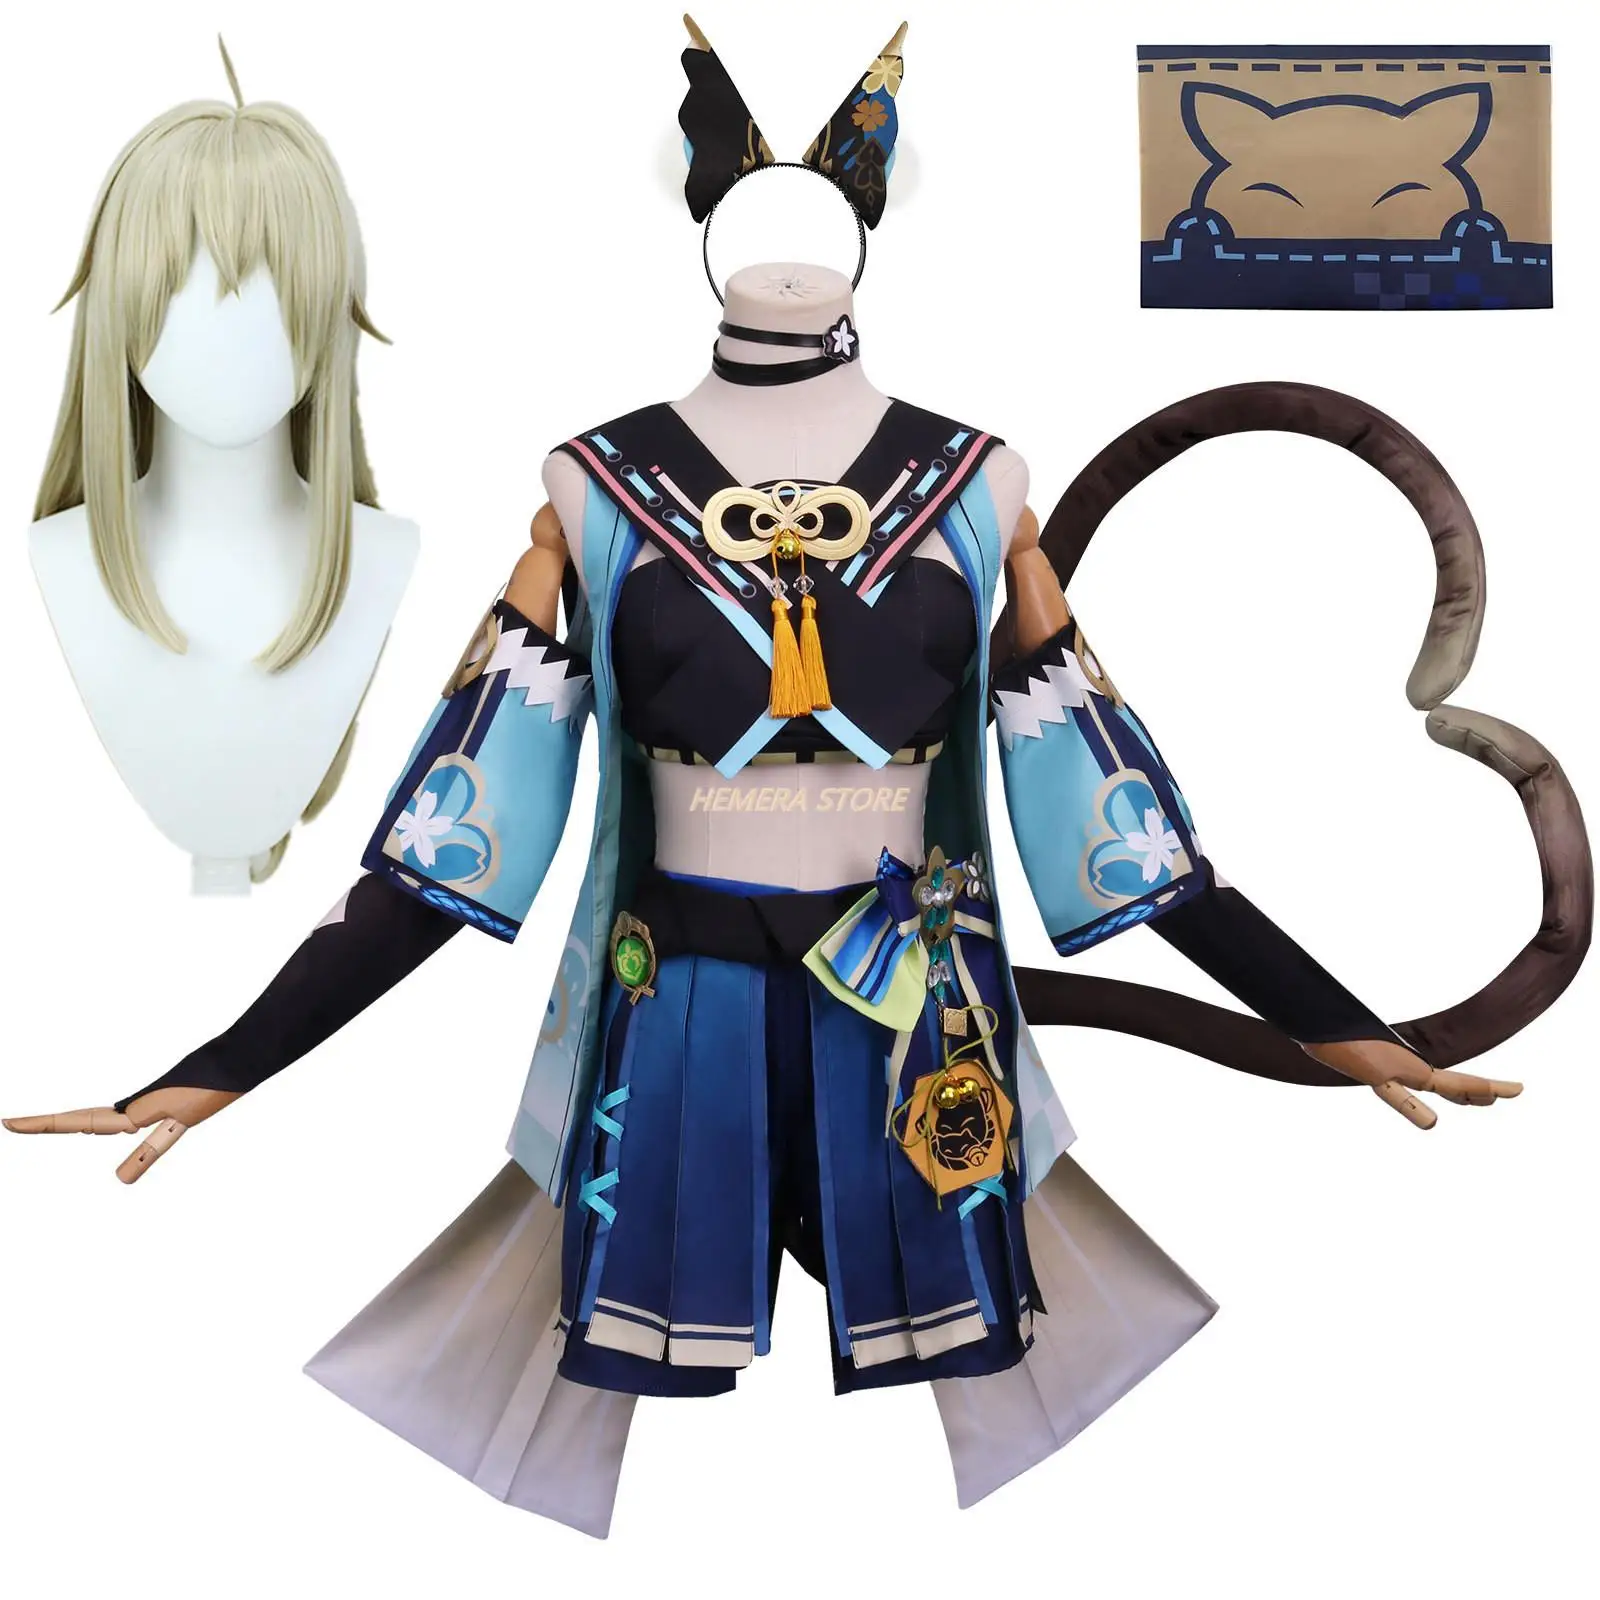 

Костюм для косплея аниме Genshin Impact Kirara, игровой костюм, милая Карнавальная форма, платье на Хэллоуин, женский костюм для ролевой вечеринки, Новинка